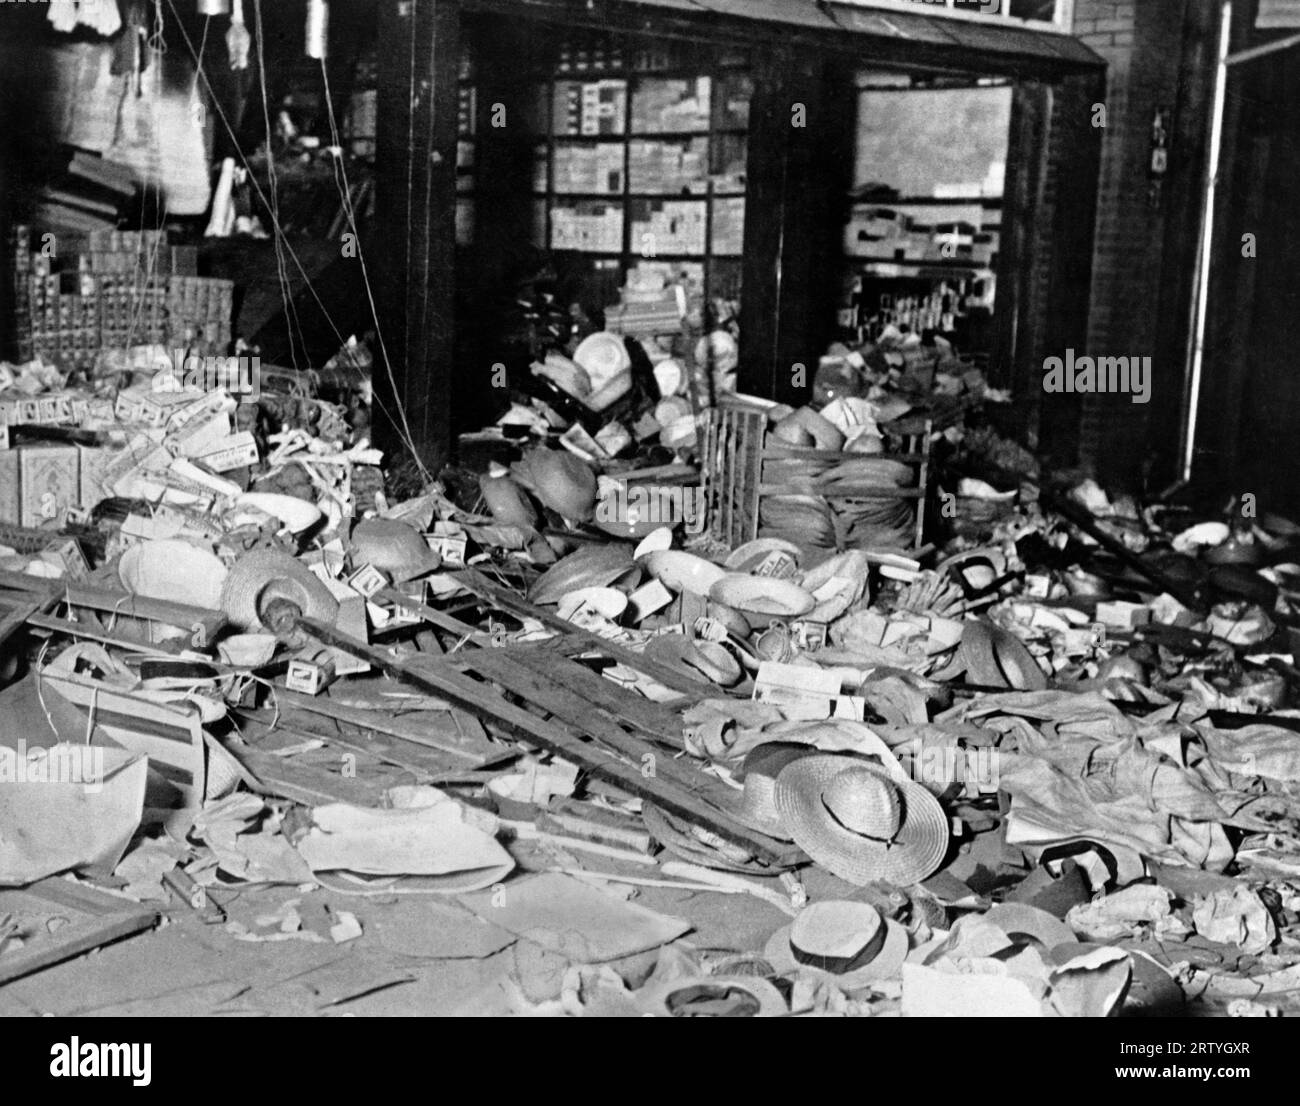 Pingvang, Corea, 21 luglio 1931 i negozianti cinesi furono presi di mira dai coreani che erano stati arrabbiati dalle notizie della Manciuria secondo cui un certo numero di coreani era stato picchiato male da una folla cinese. I coreani uccisero 88 cinesi e distrussero i loro negozi come mostrato qui. Foto Stock